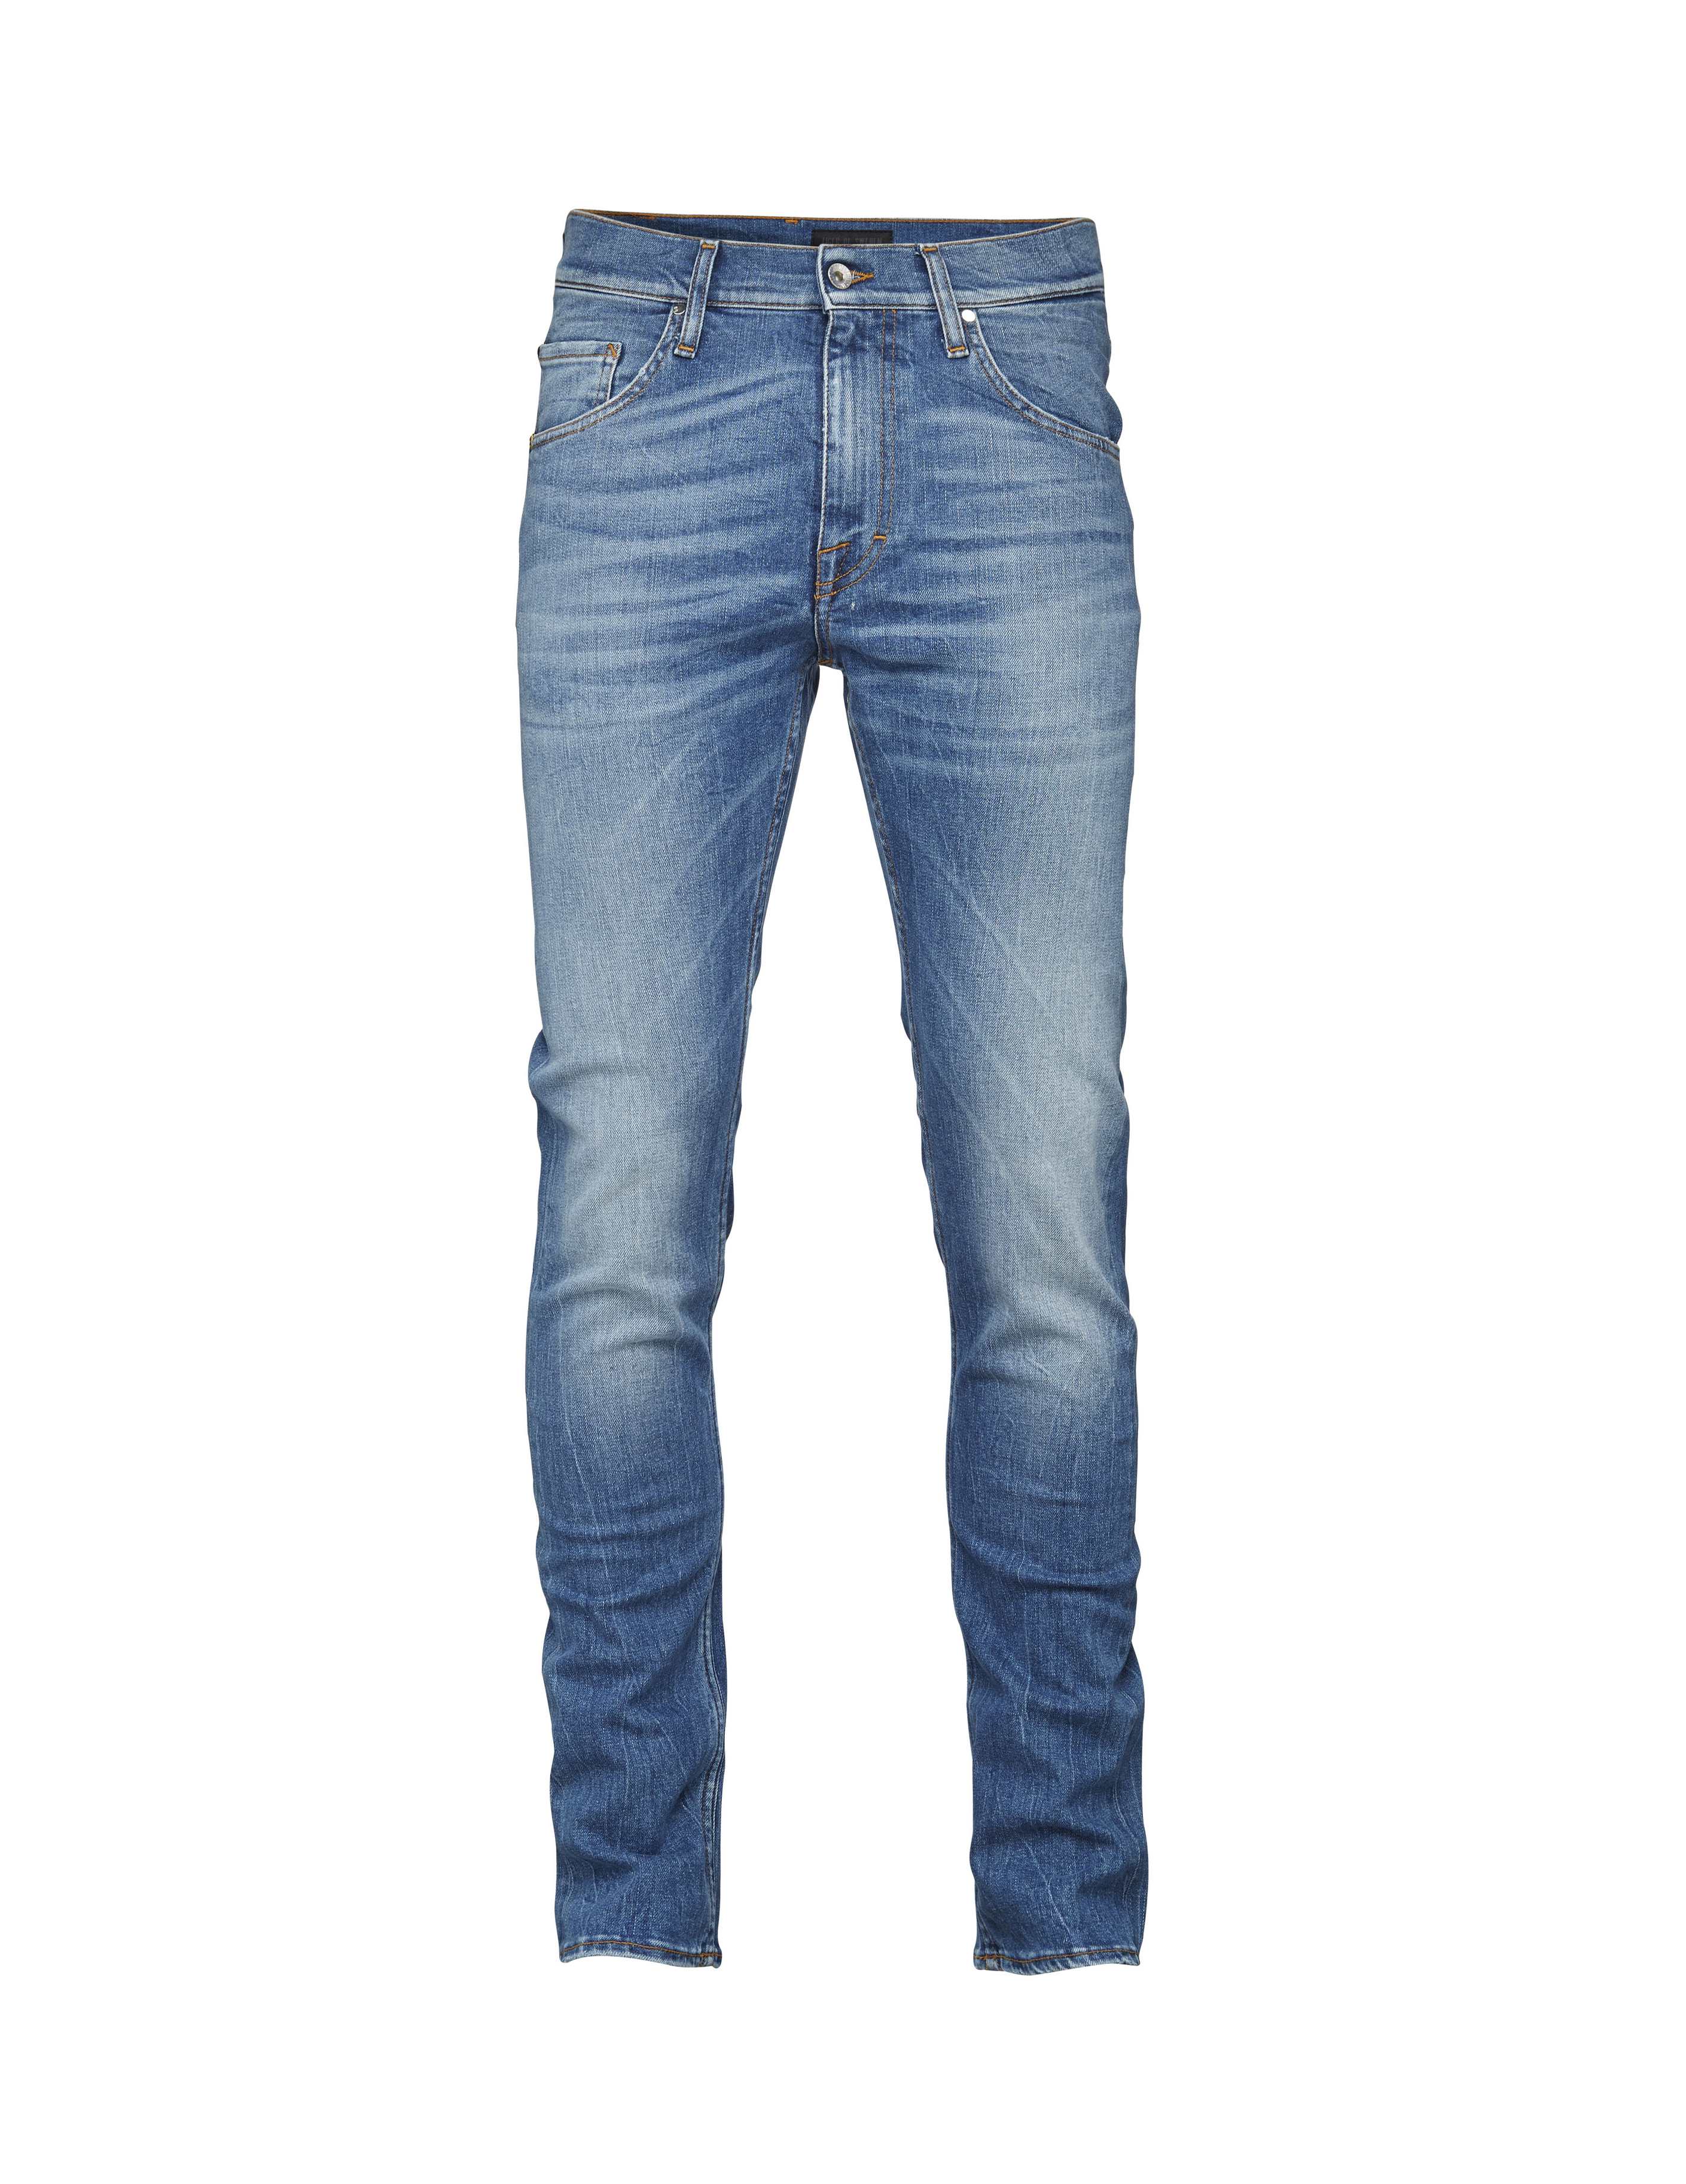 Tiger of Sweden Jeans, Iggy jeans,